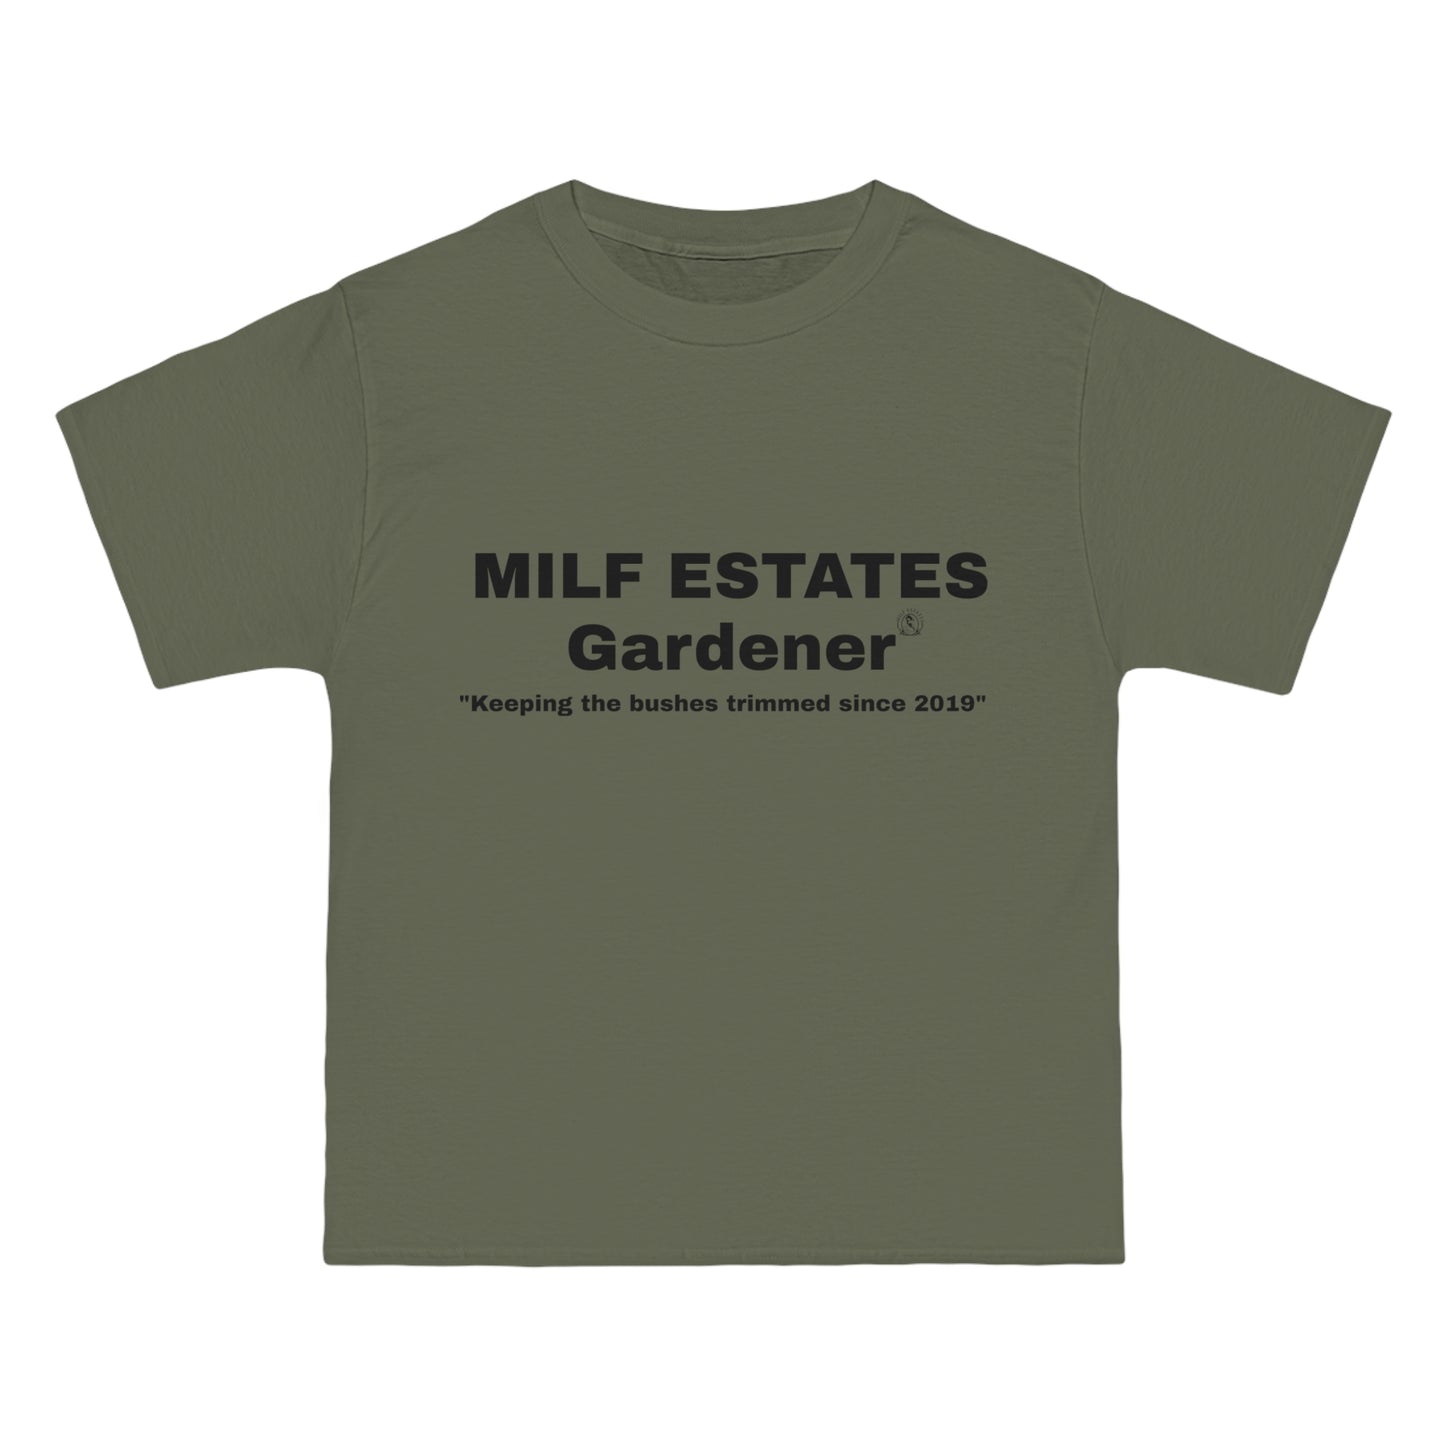 MILF ESTATES Gardener "Keeping the bushes trimmed since 2019"